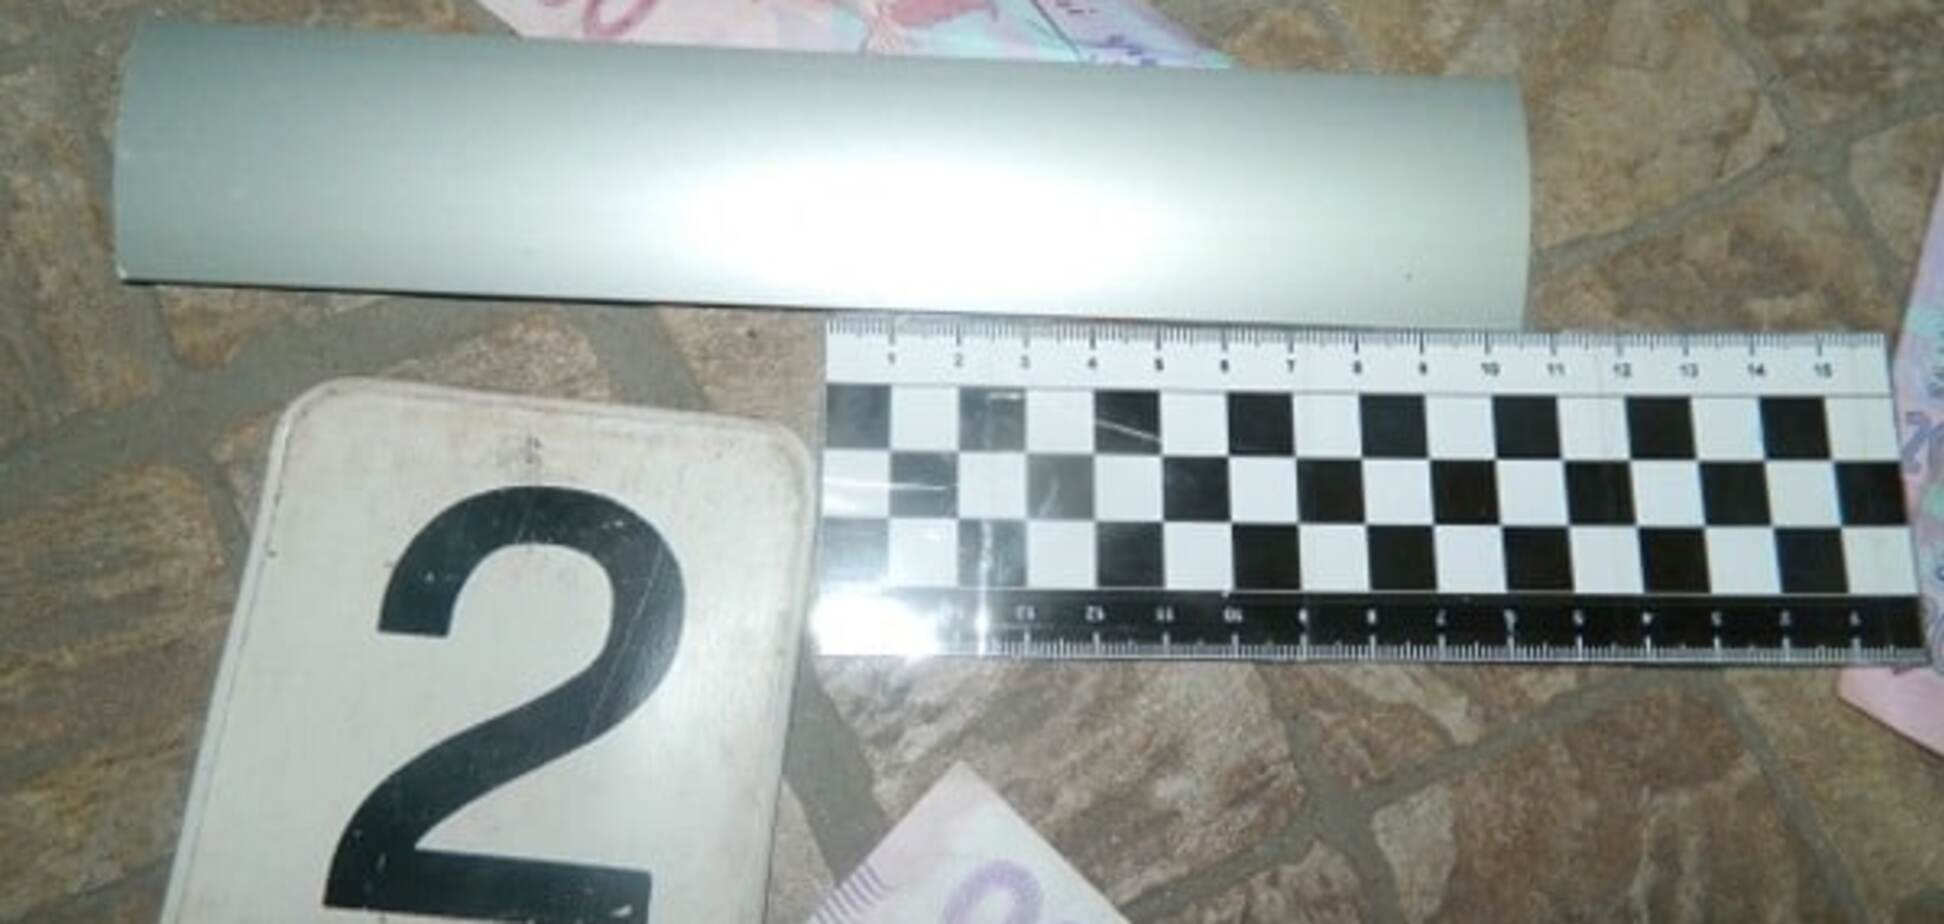 Полиция задержала киевлянина, который обчищал банкоматы оригинальным способом